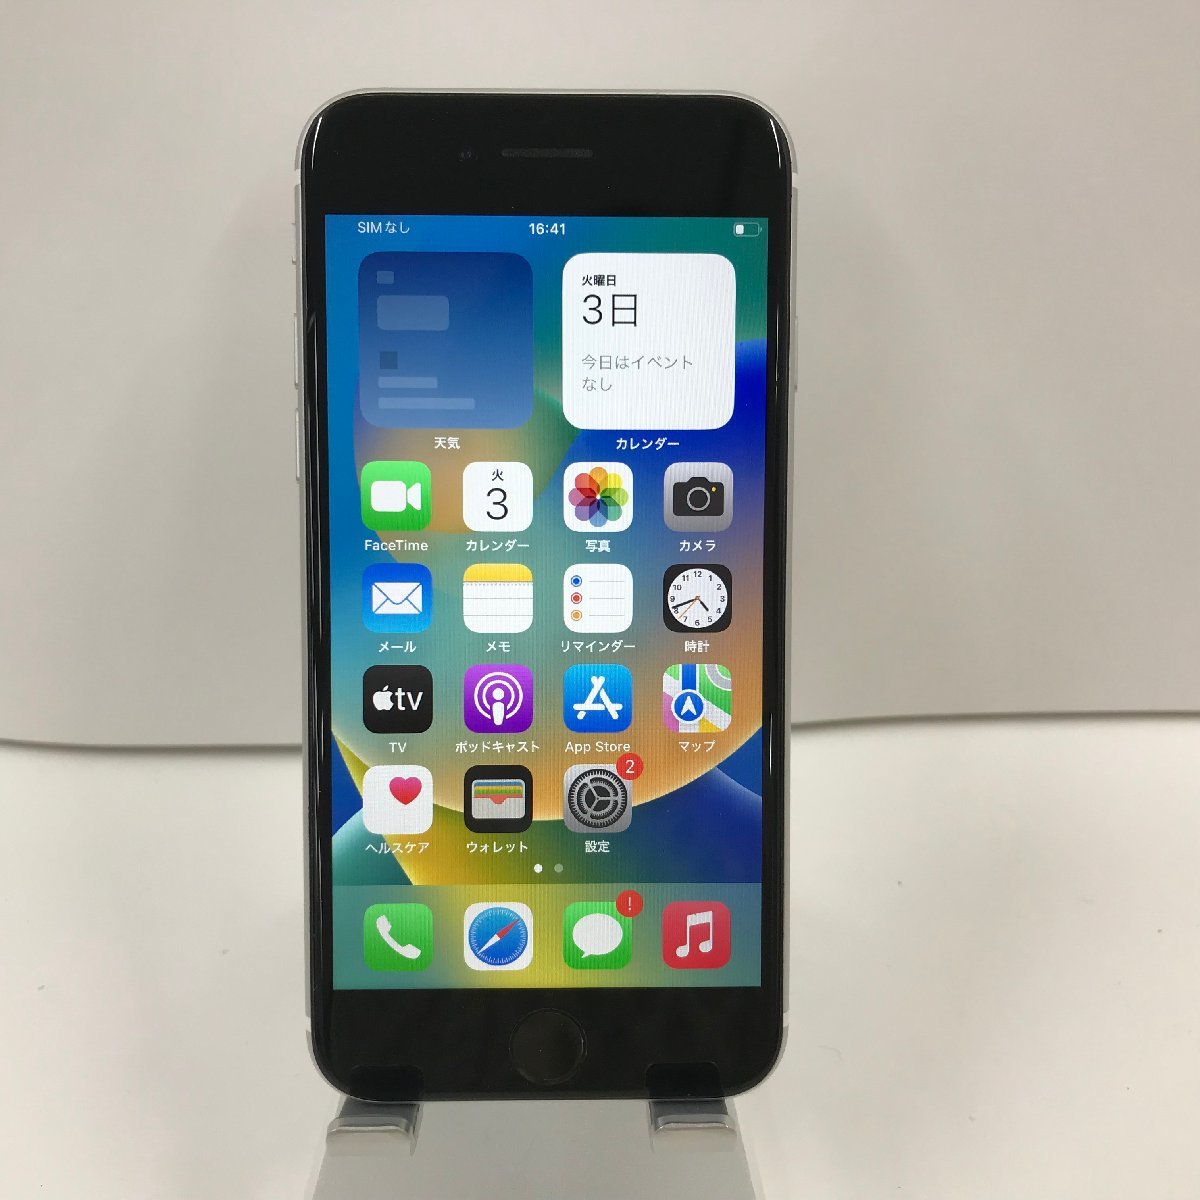 最高の品質の iPhoneSE(第2世代) Apple SIMロック解除済 docomo SIM